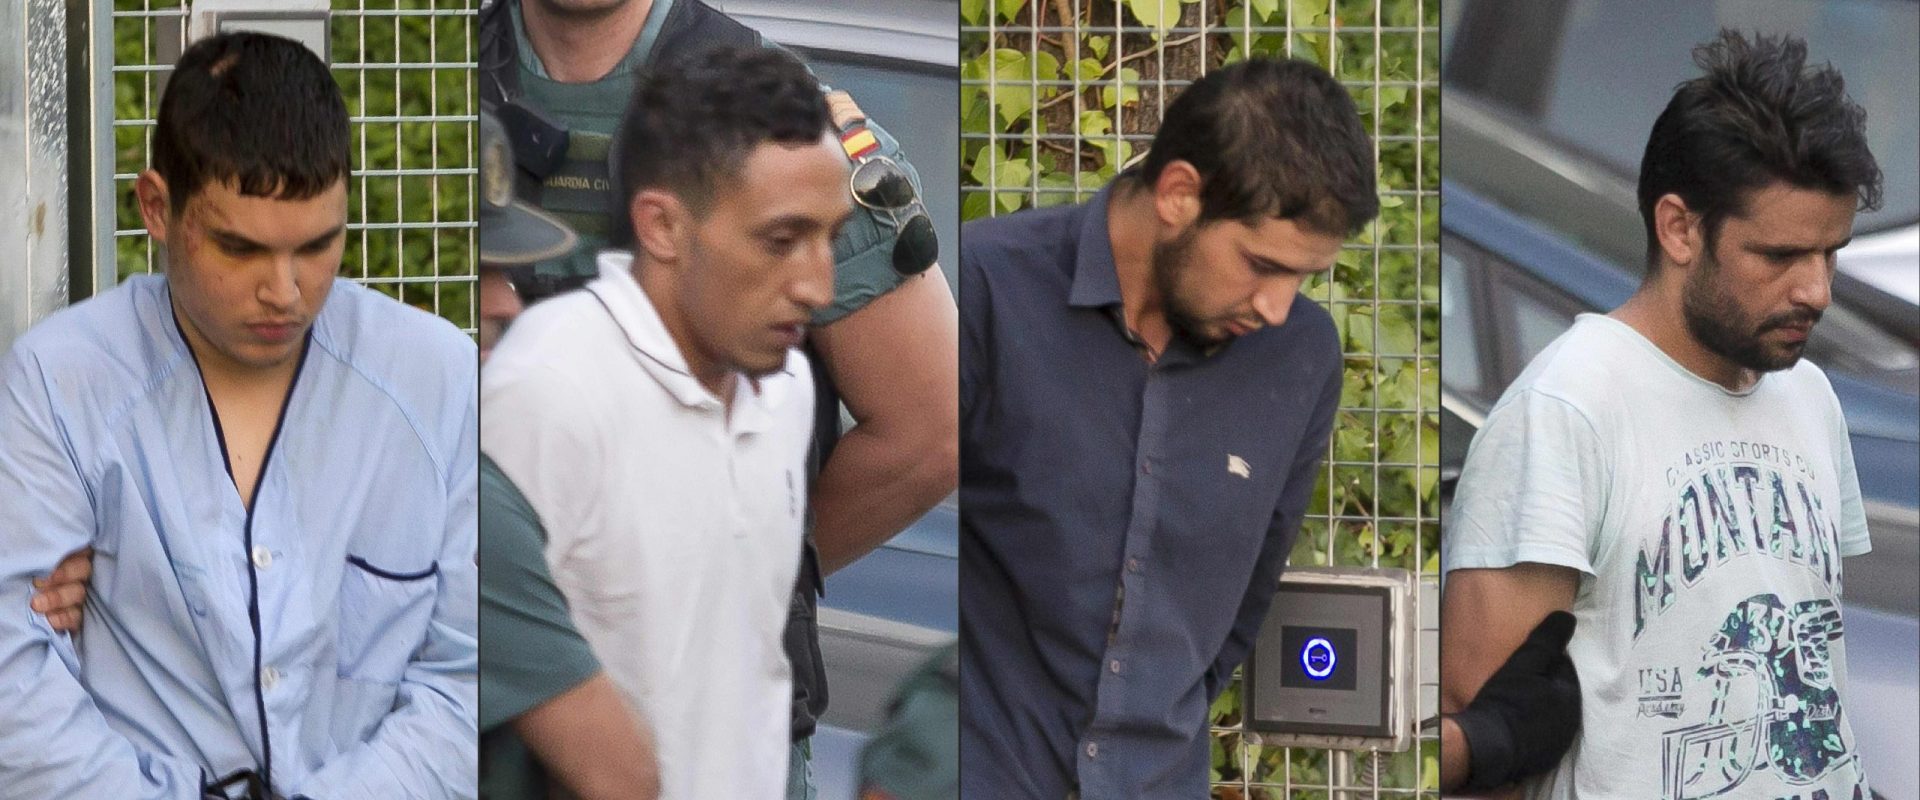 Terroristas de Barcelona estiveram em Paris uma semana antes dos atentados na Catalunha